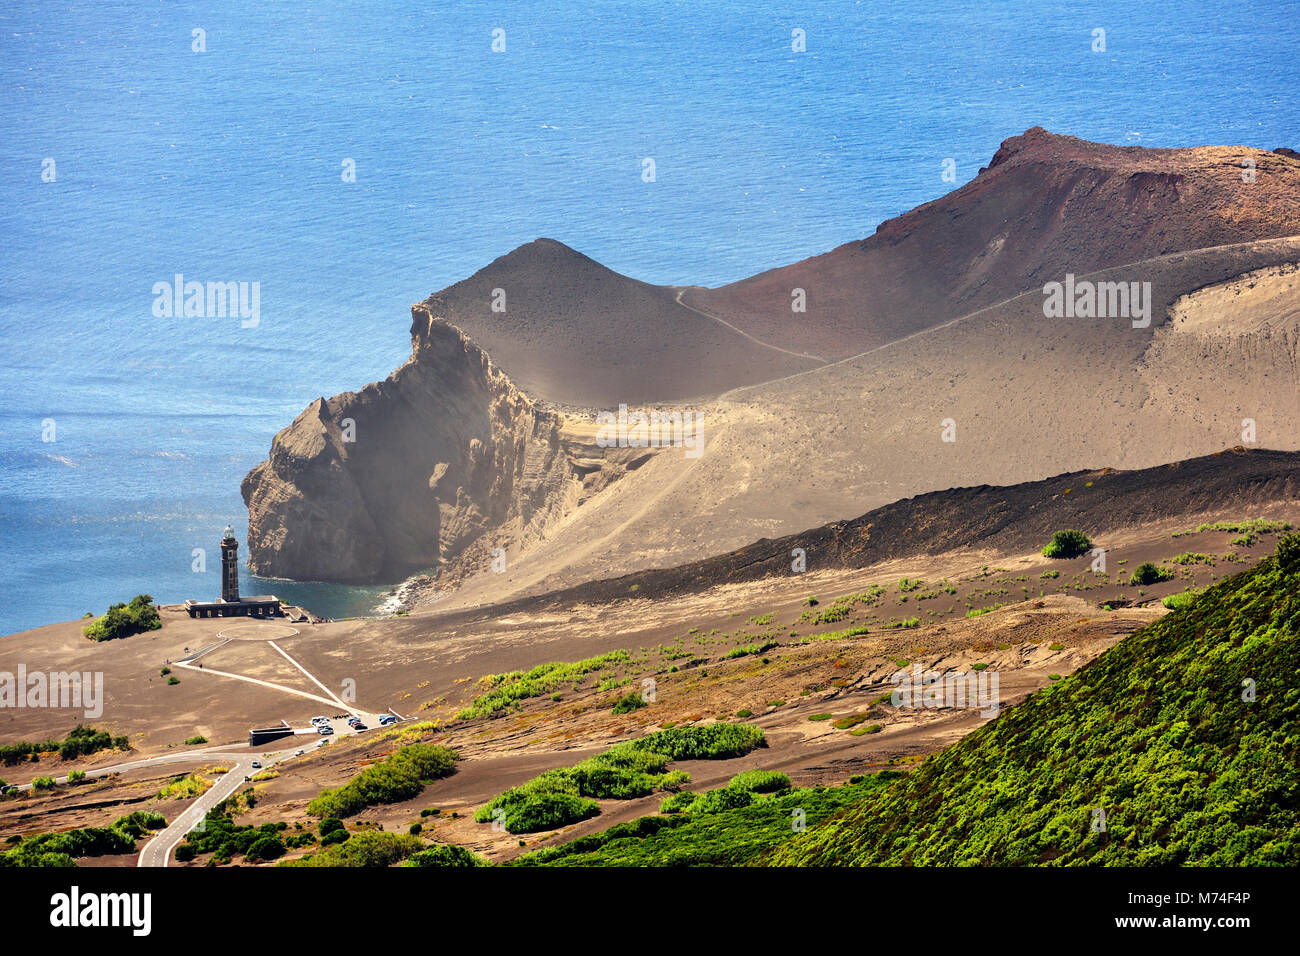 Il Vulcão dos Capelinhos Capelinhos (vulcano) ultima eruzione è stata nel 1957. Si tratta di una grande attrazione nelle isole Azzorre per la sua storia e la sua geologia e Foto Stock